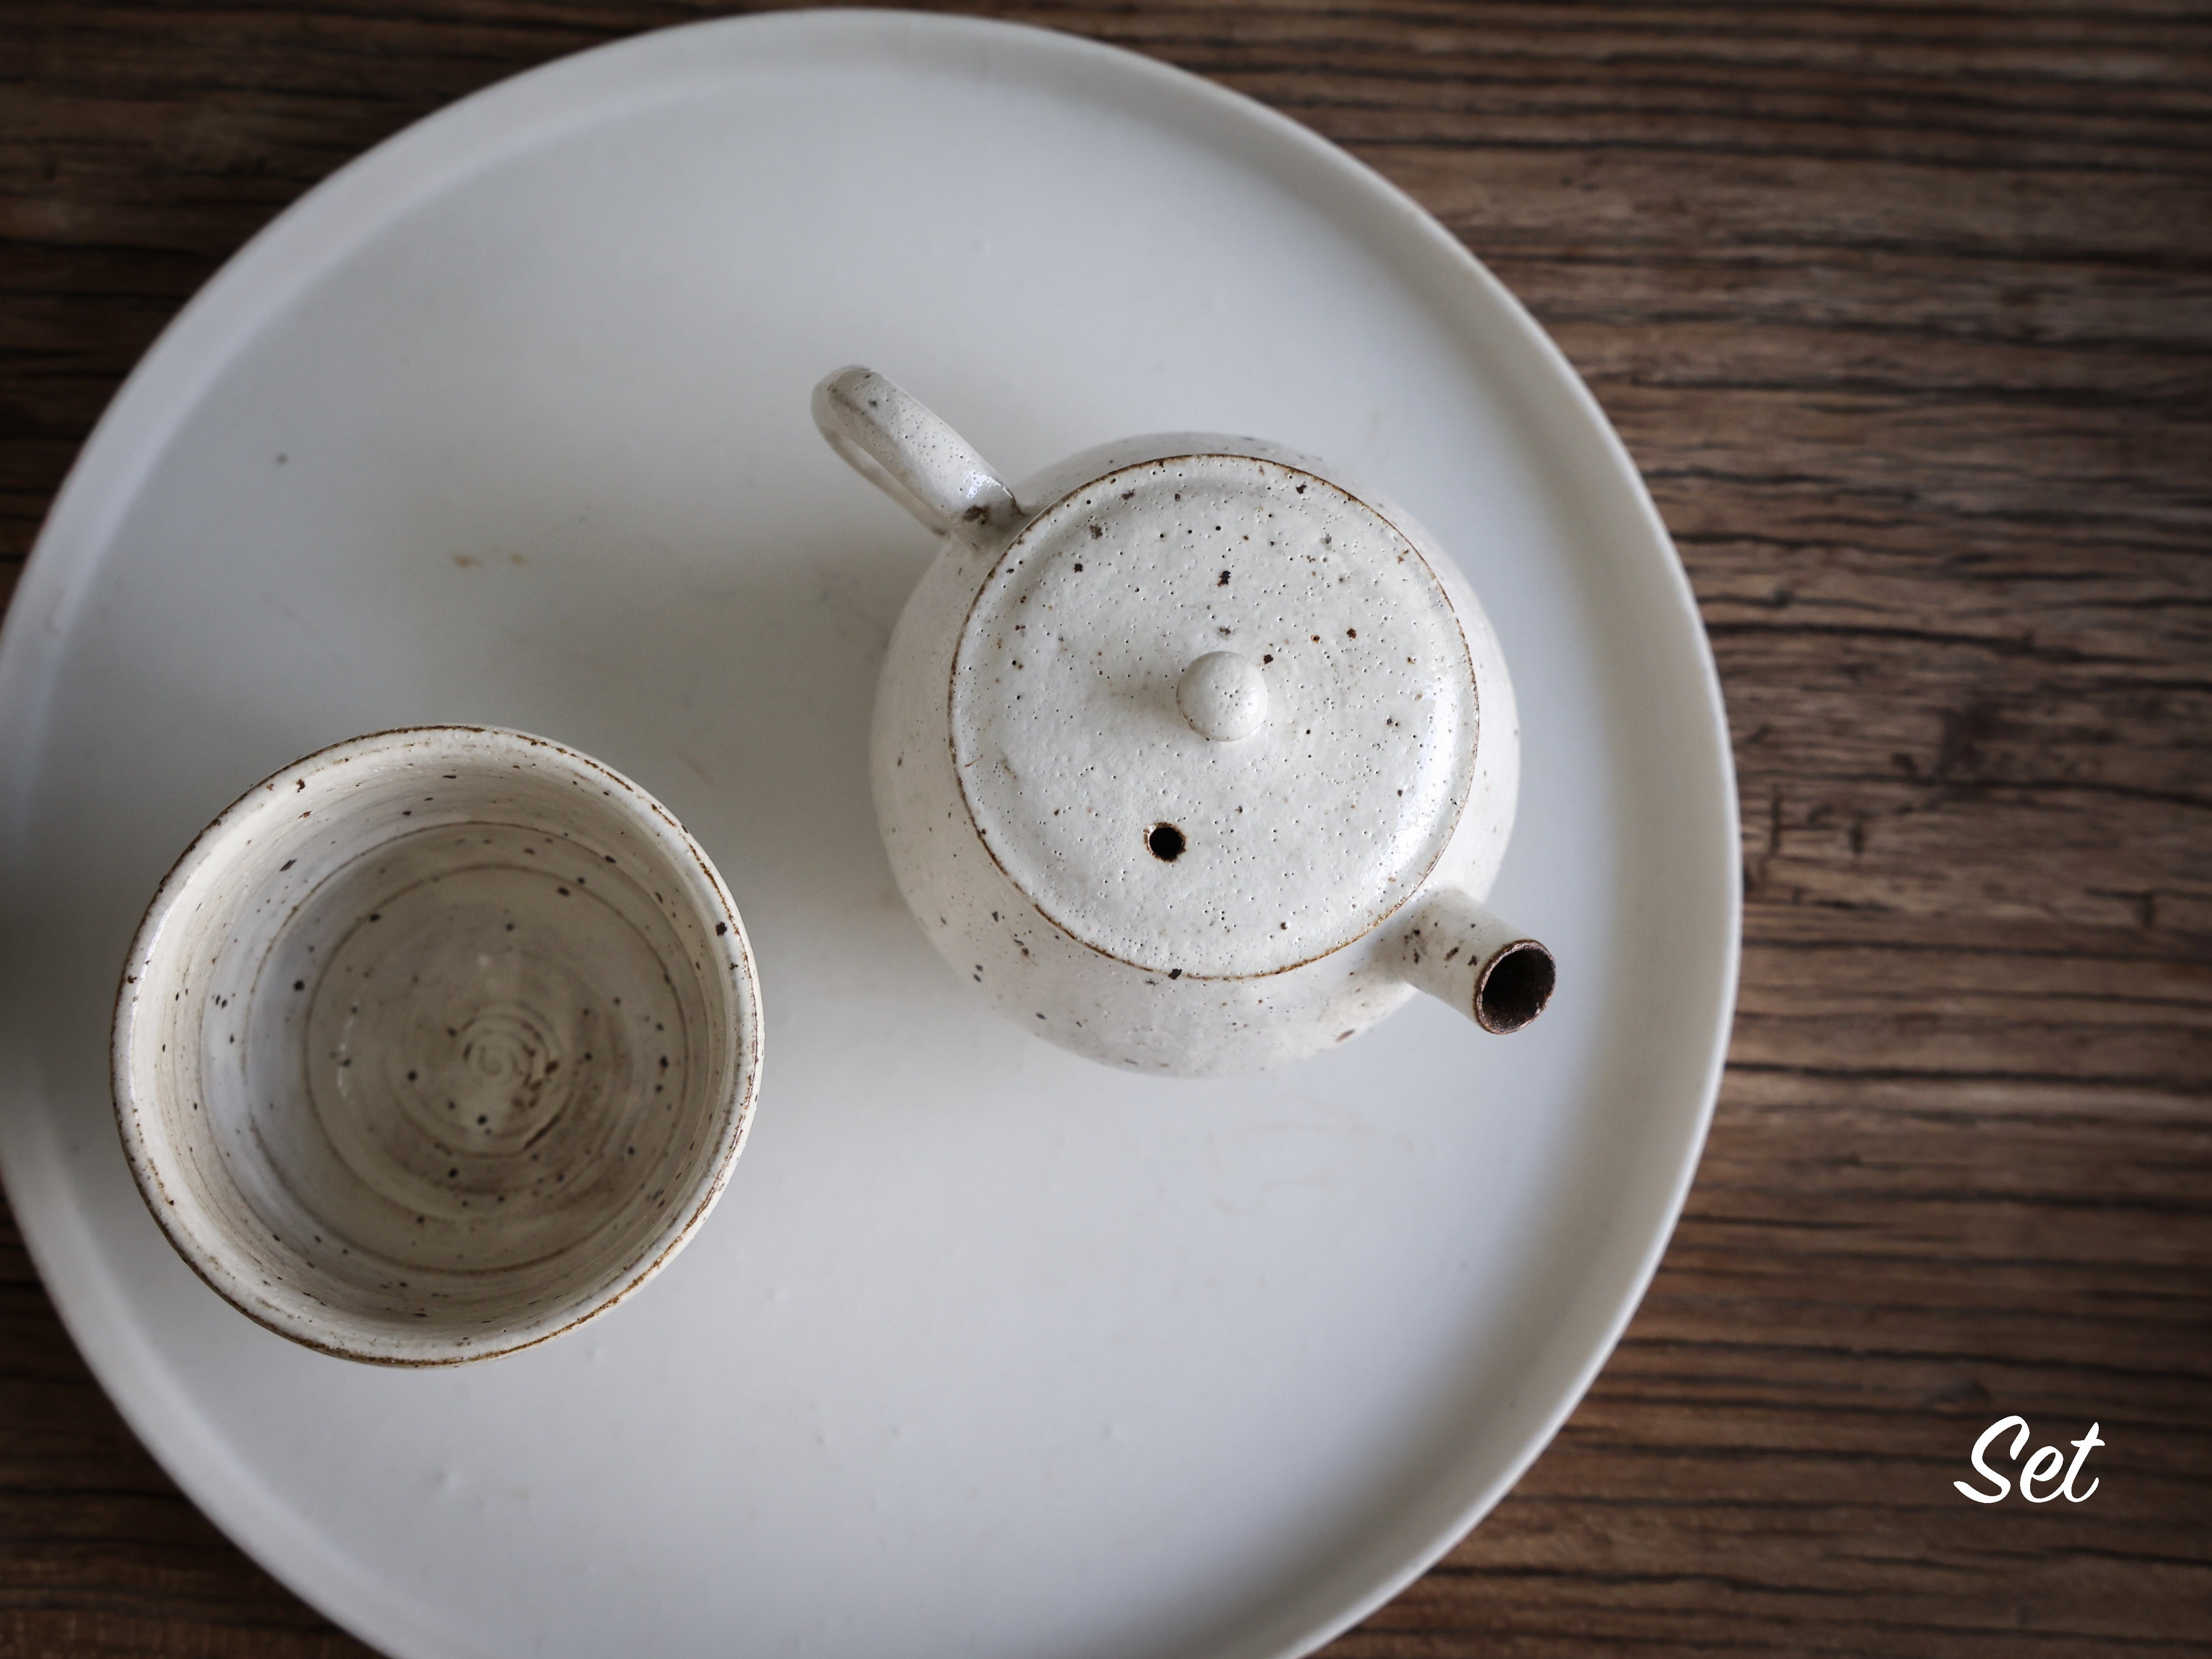 Creamy White Teapot #02